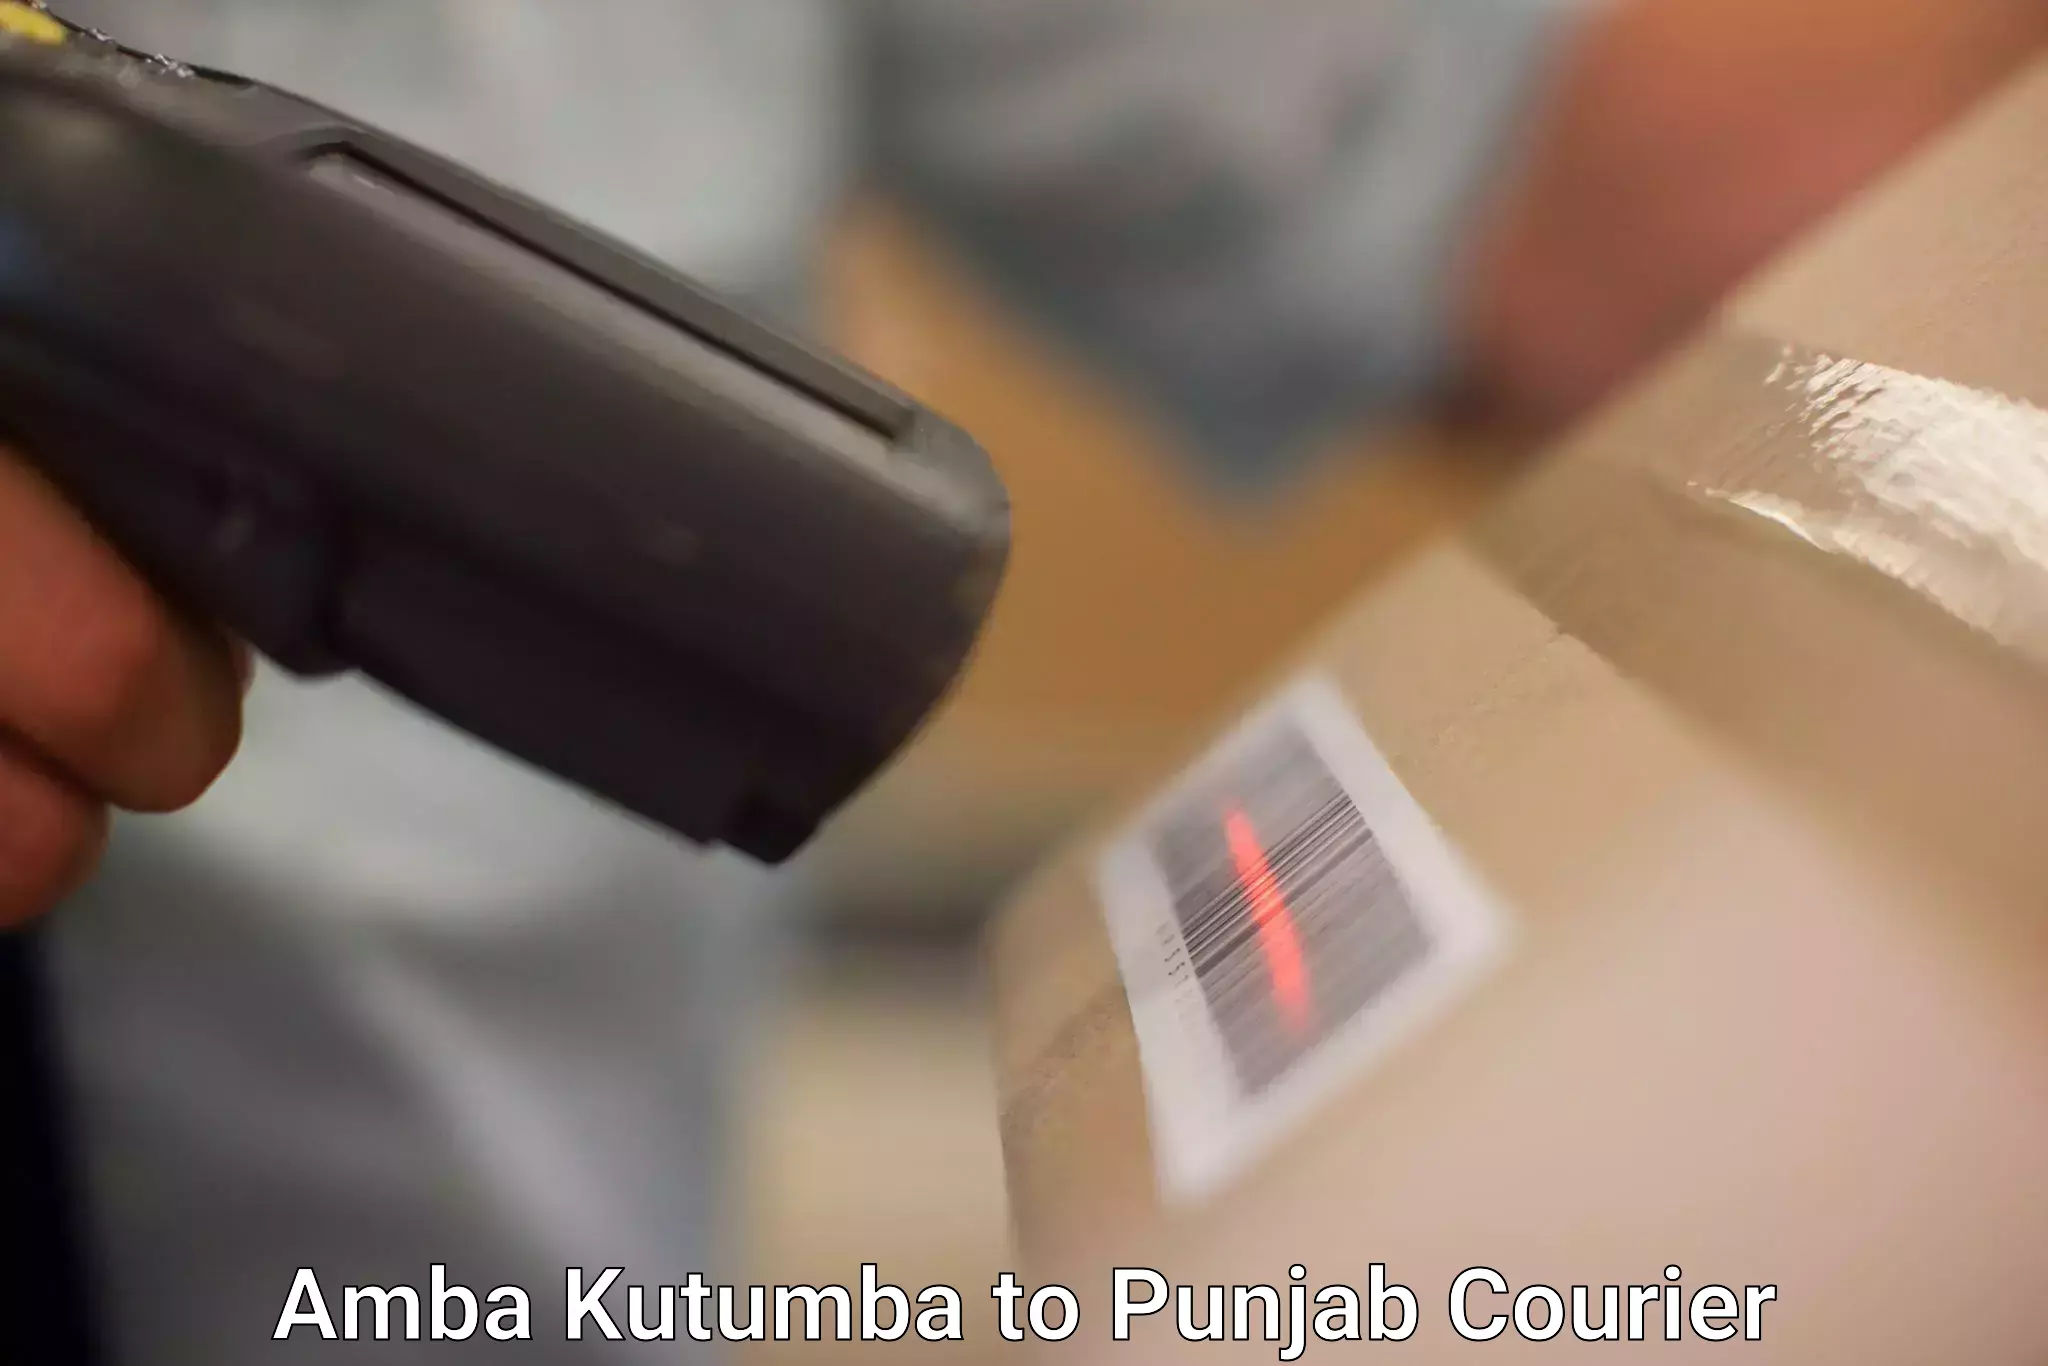 Global shipping networks Amba Kutumba to Ajnala